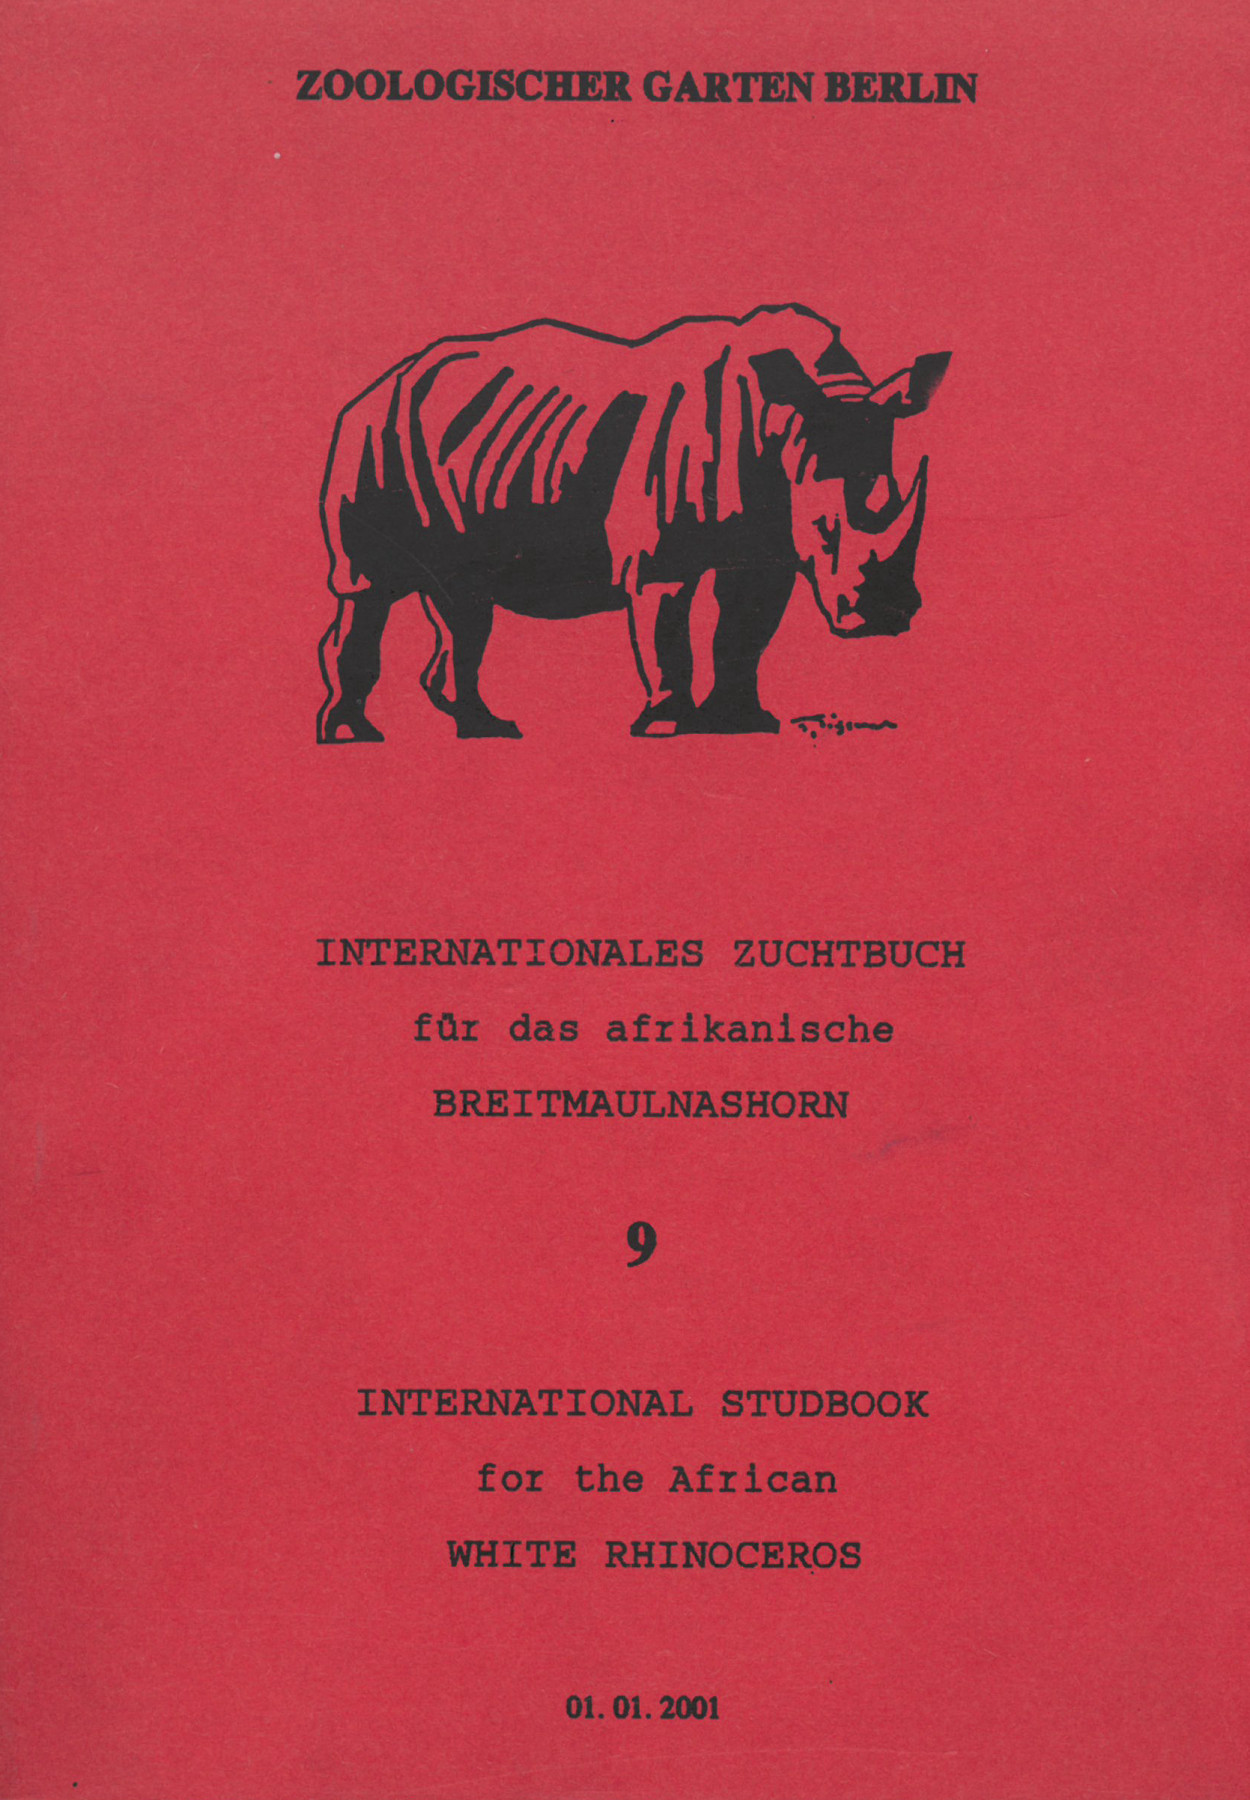 Cover of red notebook with sketch of rhinoceros. Title: Zoologischer Garten Berlin – Internationales Zuchtbuch für das afrikanische Breitmaulnashorn – 9 – International Studbook for the African White Rhinoceros – 01.01.2001